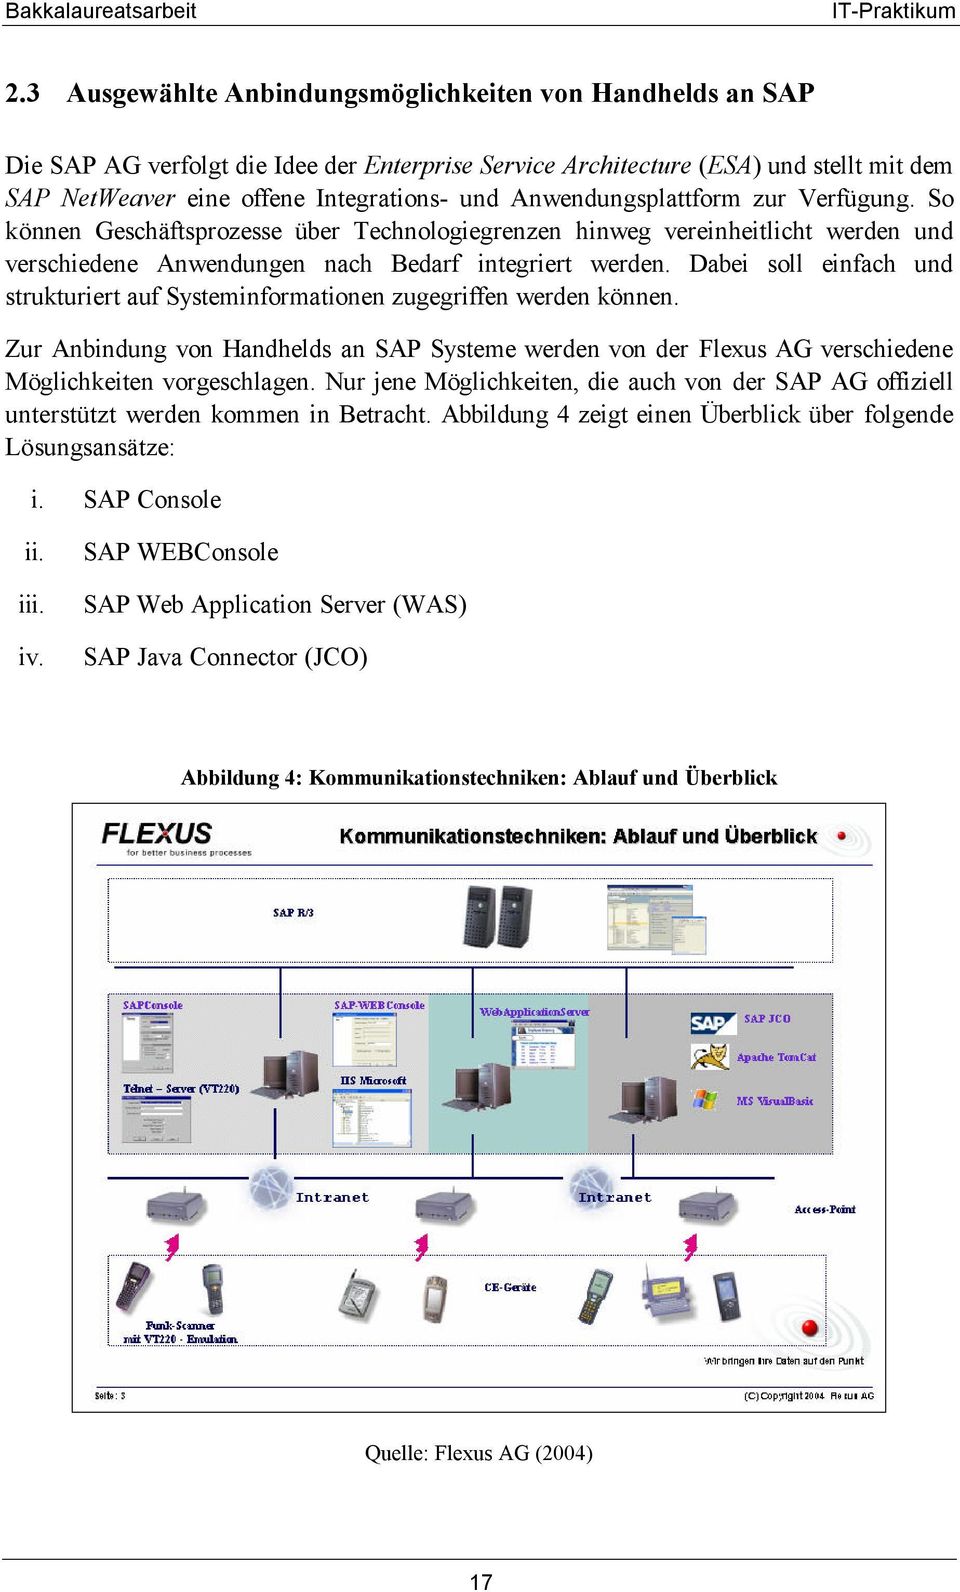 Dabei soll einfach und strukturiert auf Systeminformationen zugegriffen werden können. Zur Anbindung von Handhelds an SAP Systeme werden von der Flexus AG verschiedene Möglichkeiten vorgeschlagen.